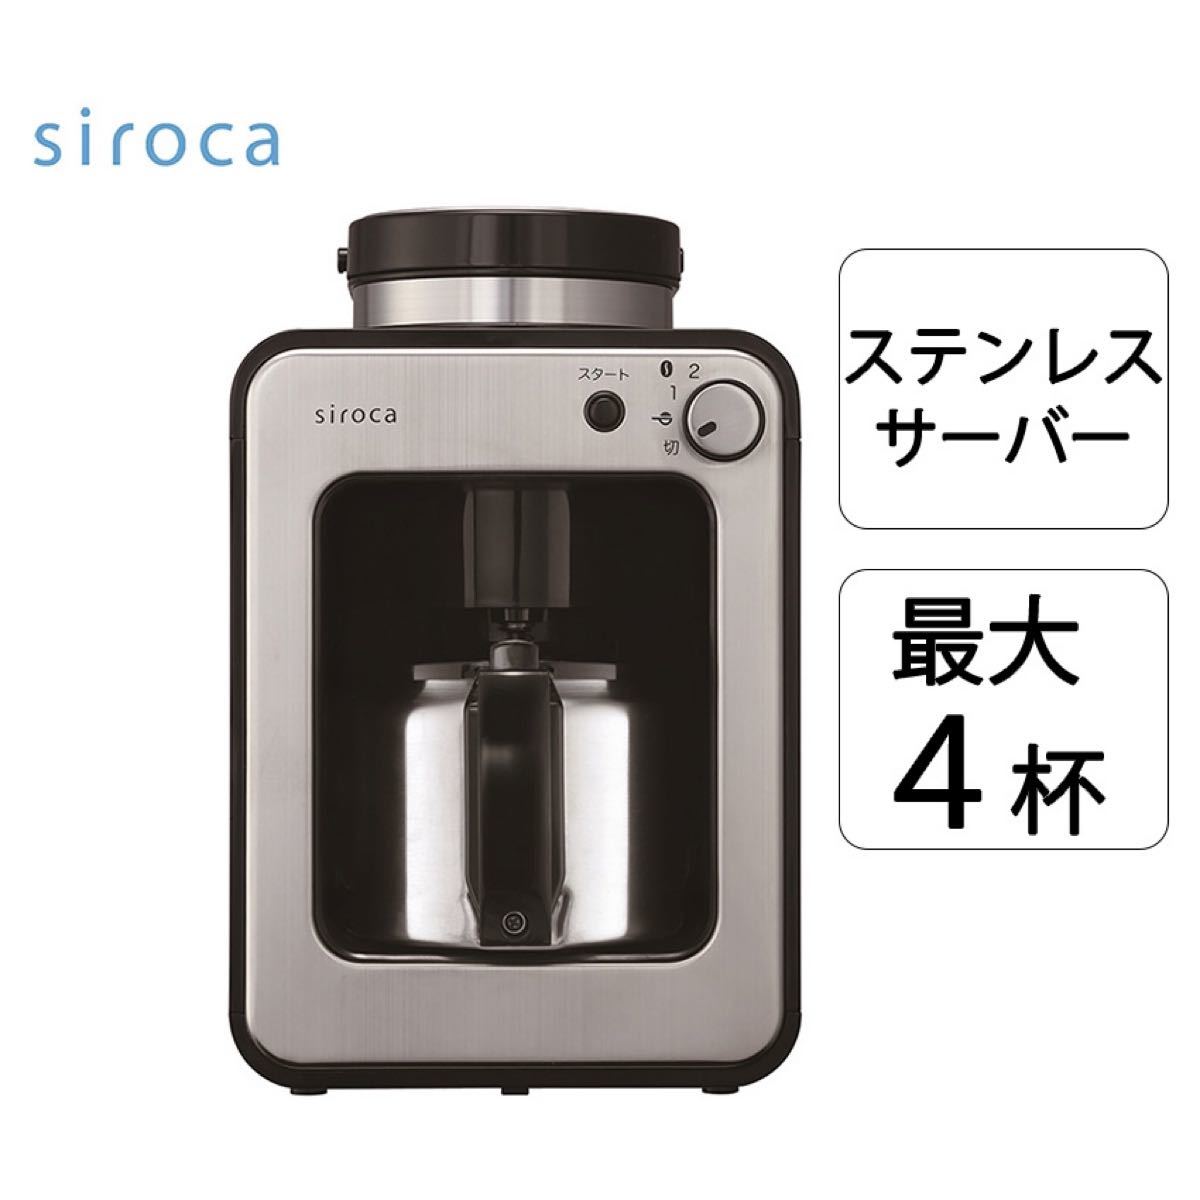 siroca シロカ 全自動 コーヒーメーカー SC-A251 シルバー SC-A211 の上位モデル